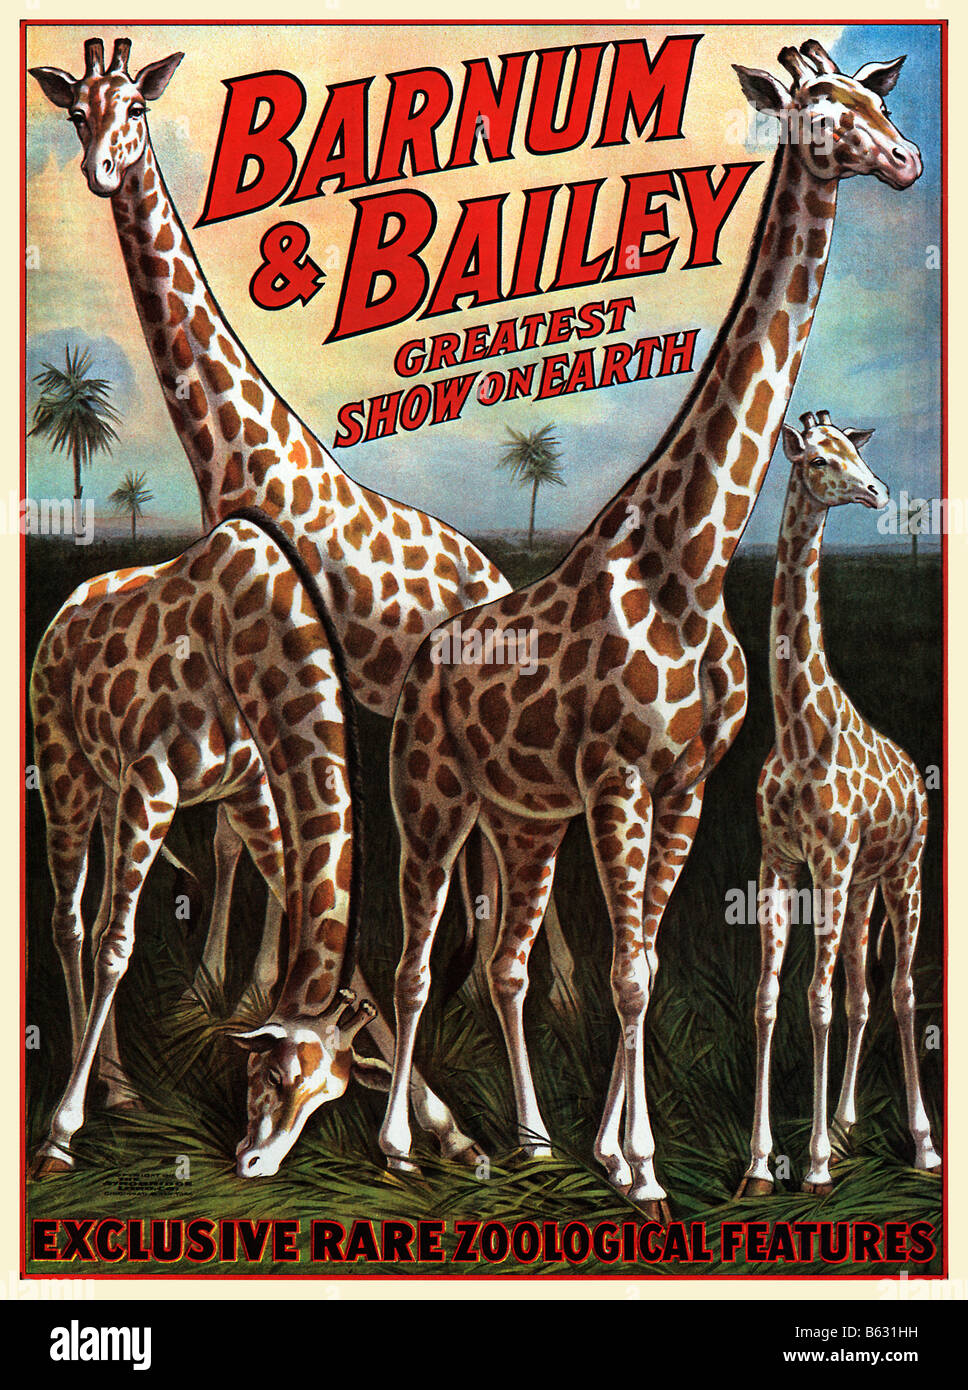 Barnum und Bailey Giraffen 1917 Plakat für die größte Show auf Erden mit exklusiven seltenen zoologischen Eigenschaften Stockfoto